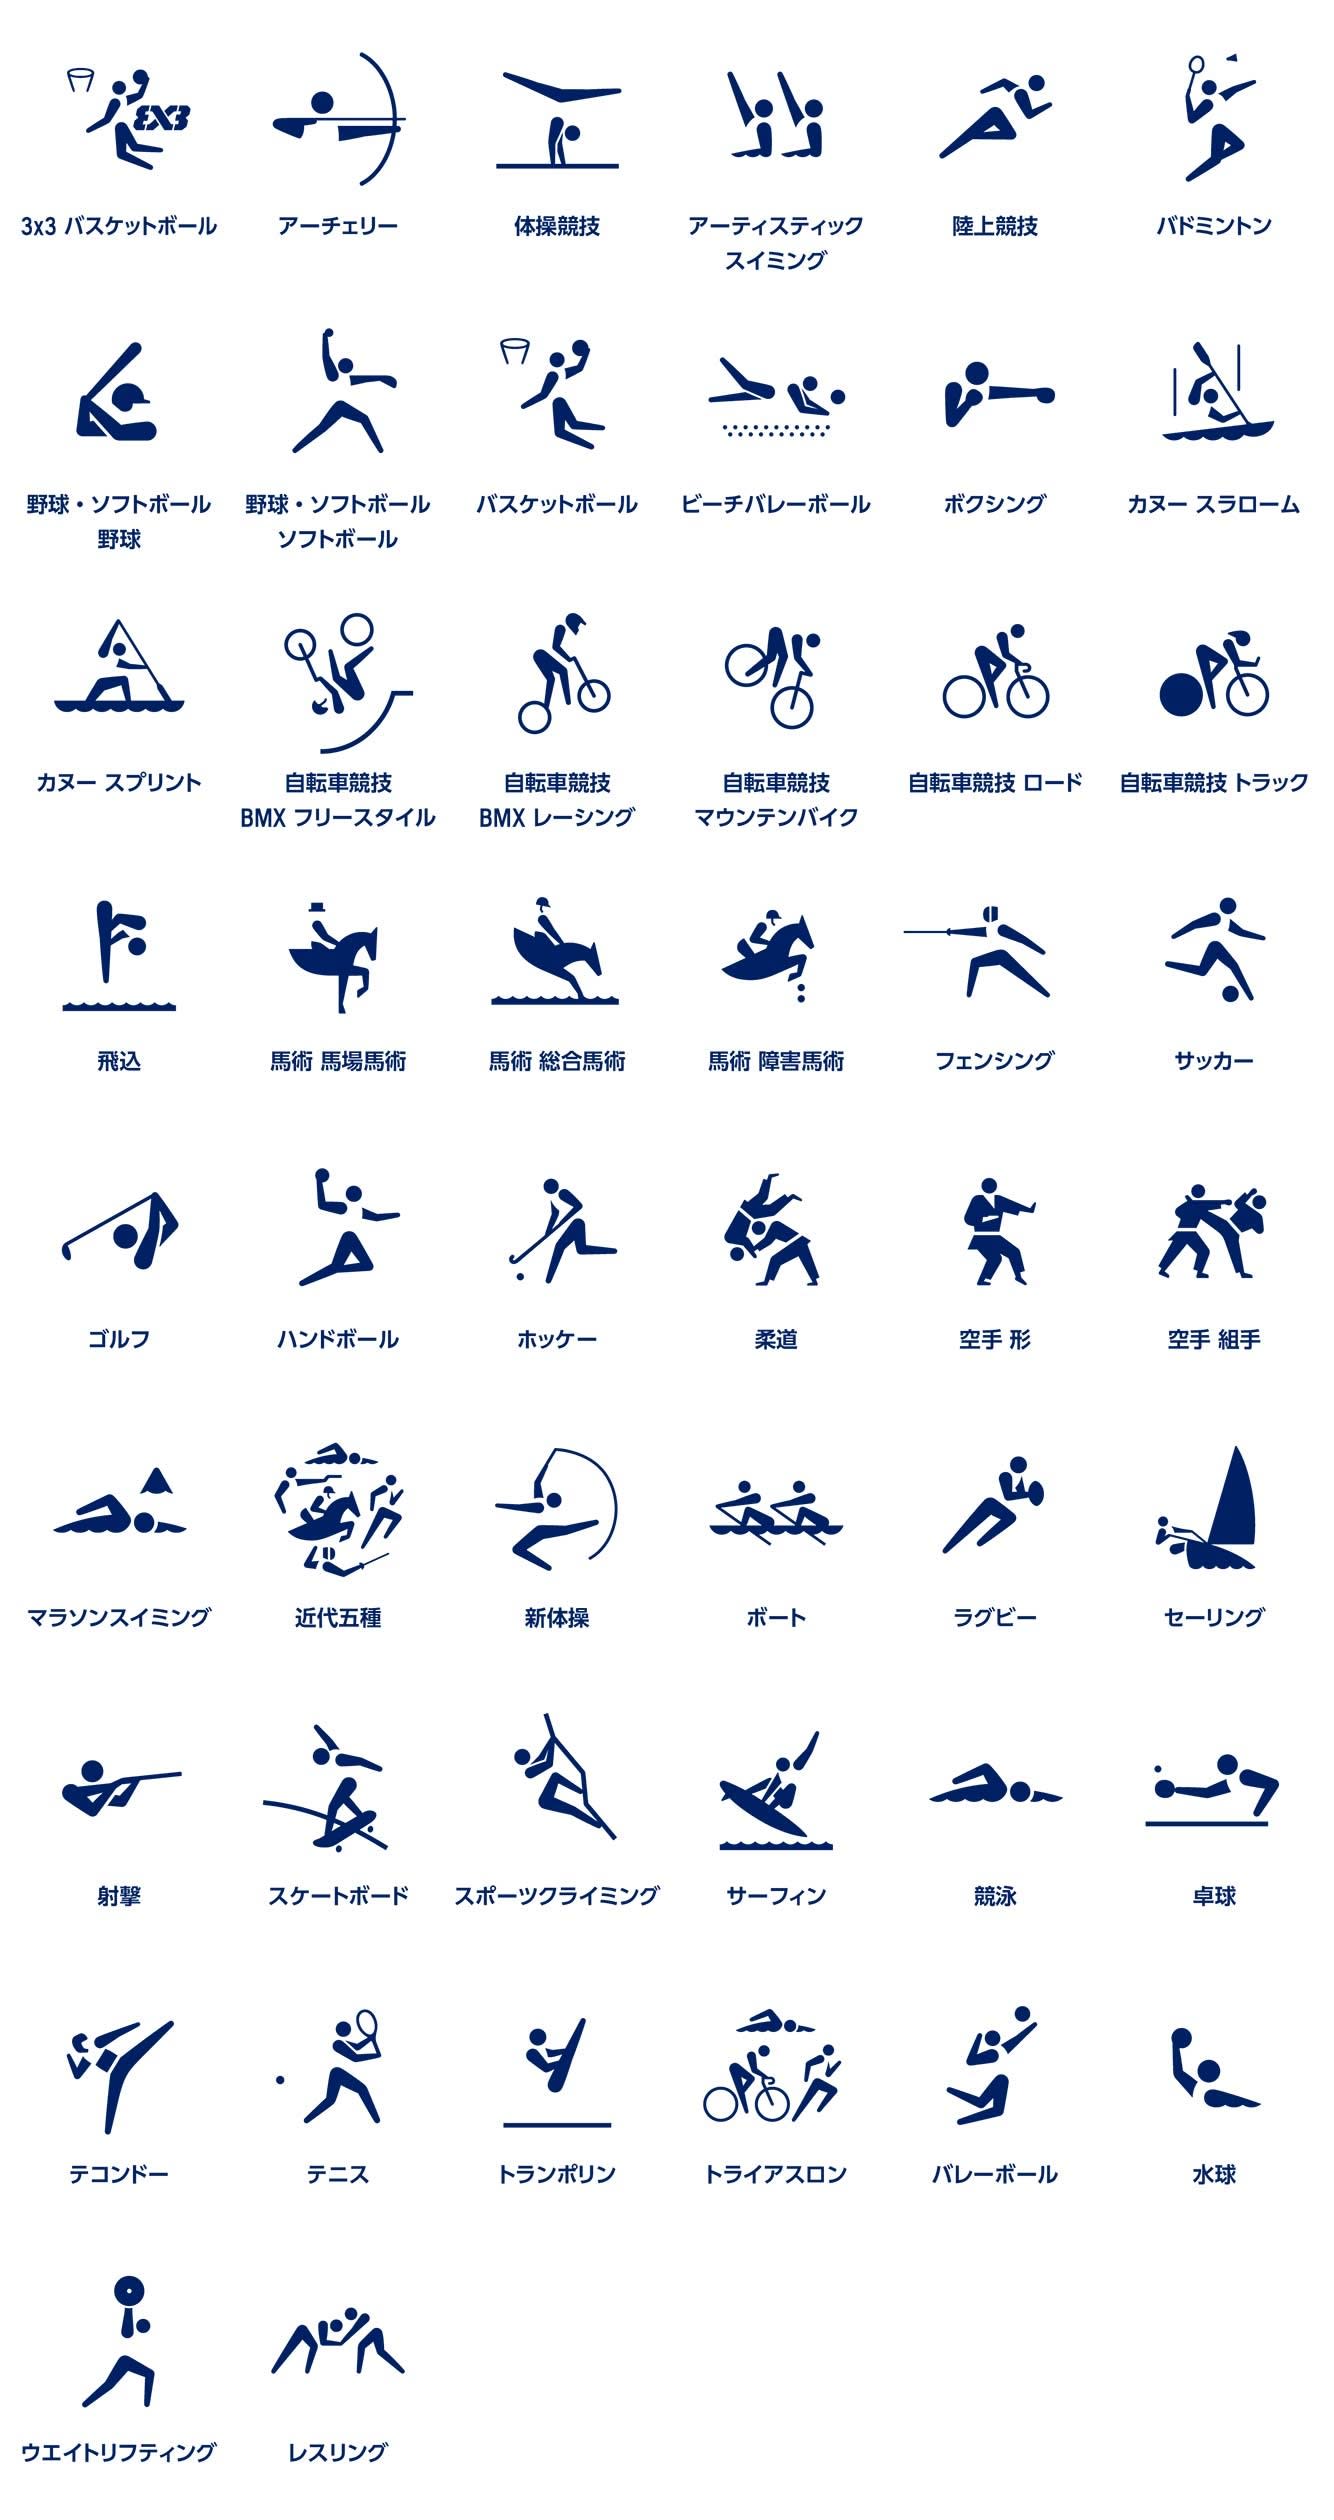 東京オリンピックスポーツピクトグラムの発表について